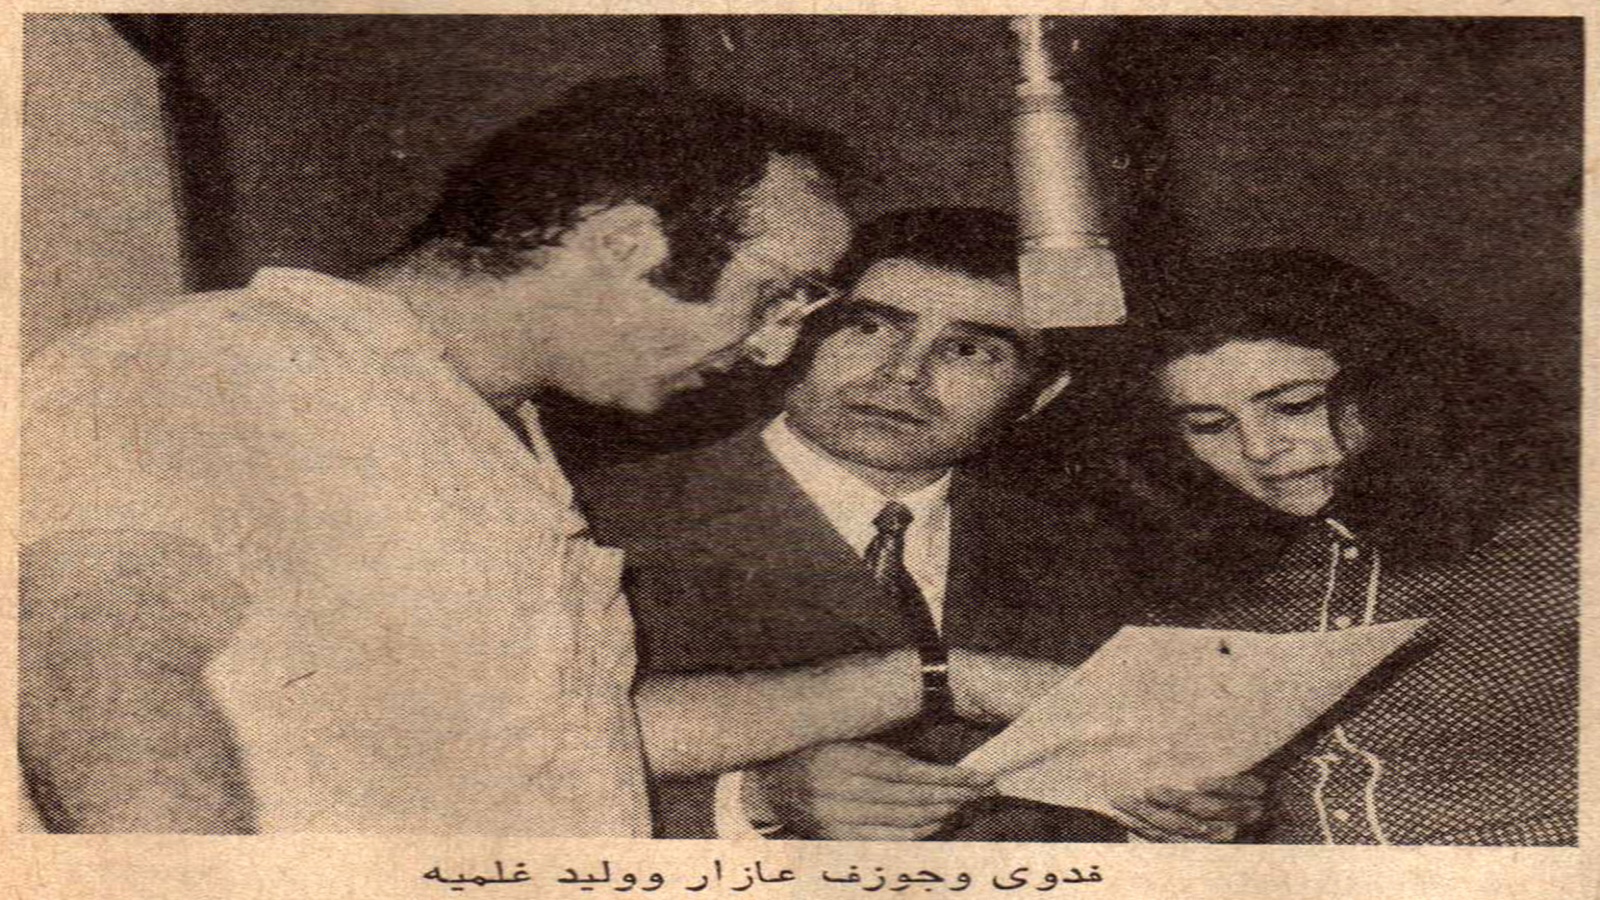 مع فدوى عبيد وجوزيف عازار، أيام "مهرجان الأنوار" 1971